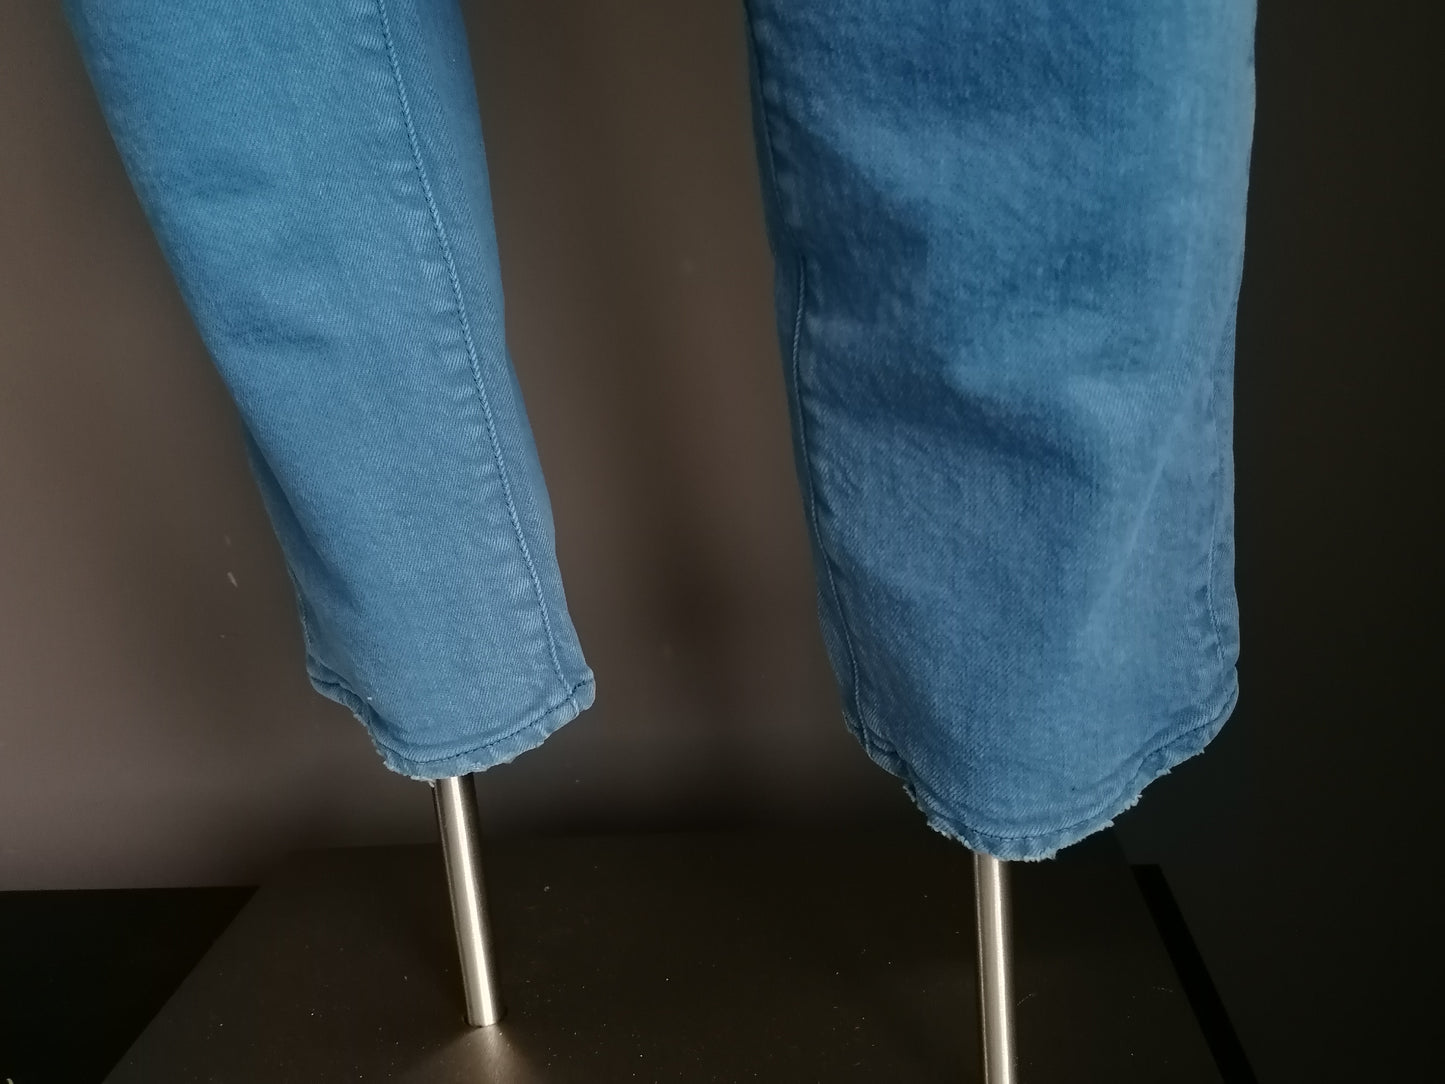 PGT riss Jeans. Blau gefärbt. Größe W32 - L32.